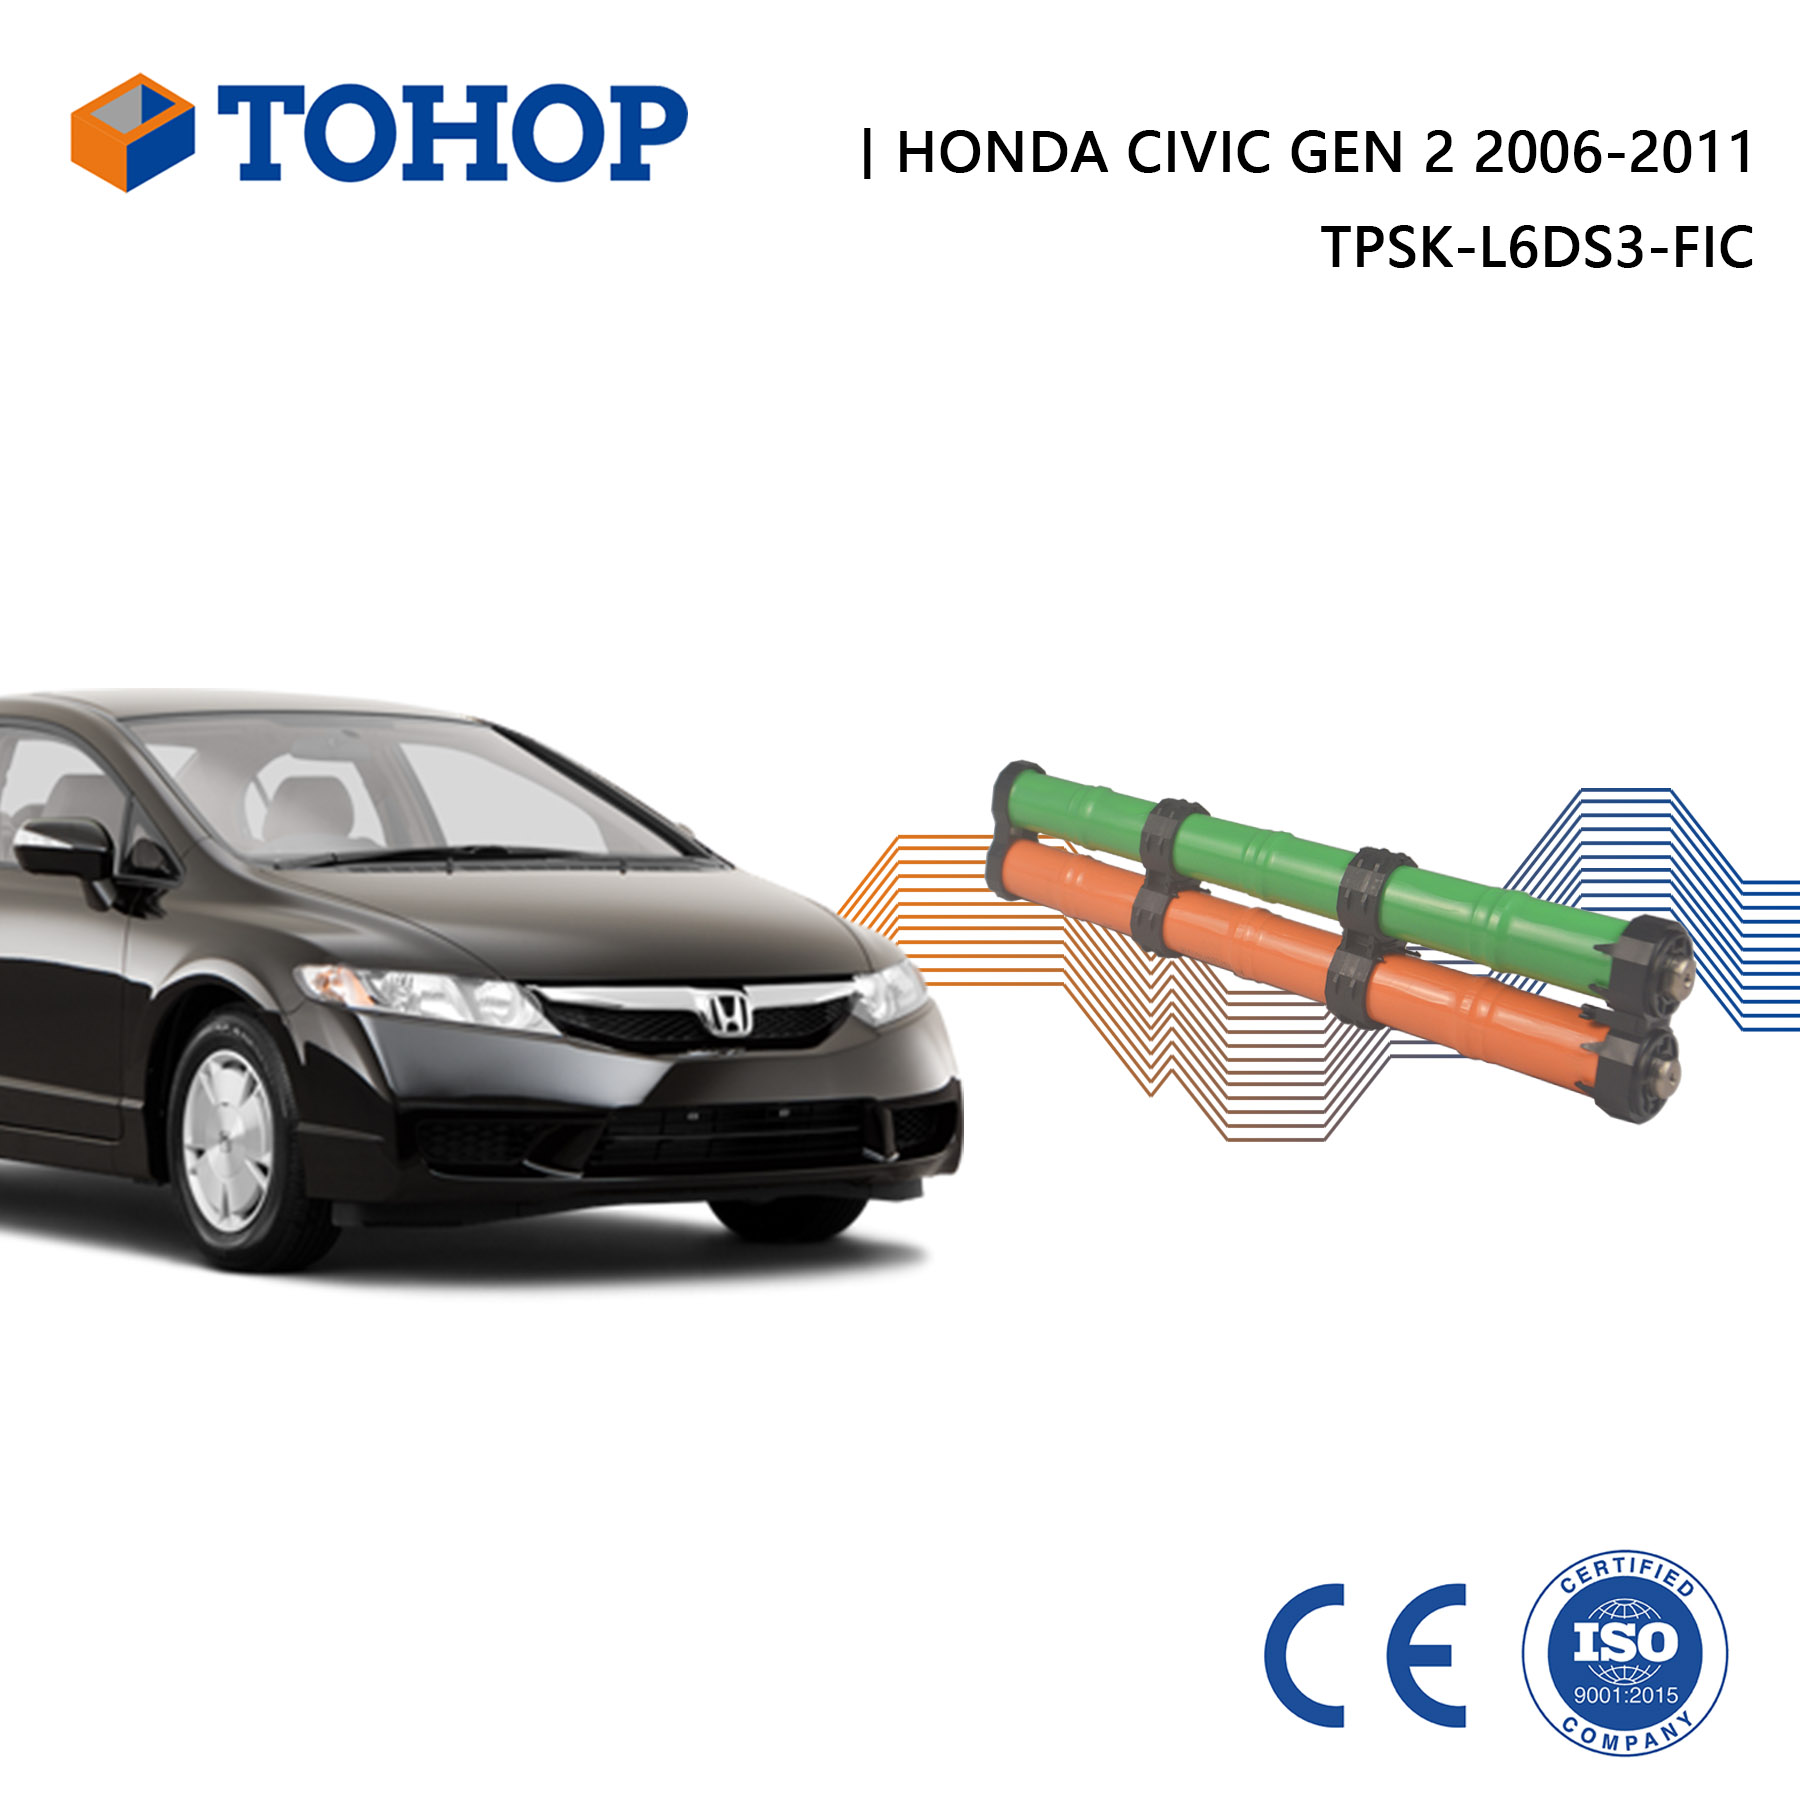 Batería híbrida Honda Civic Gen 2